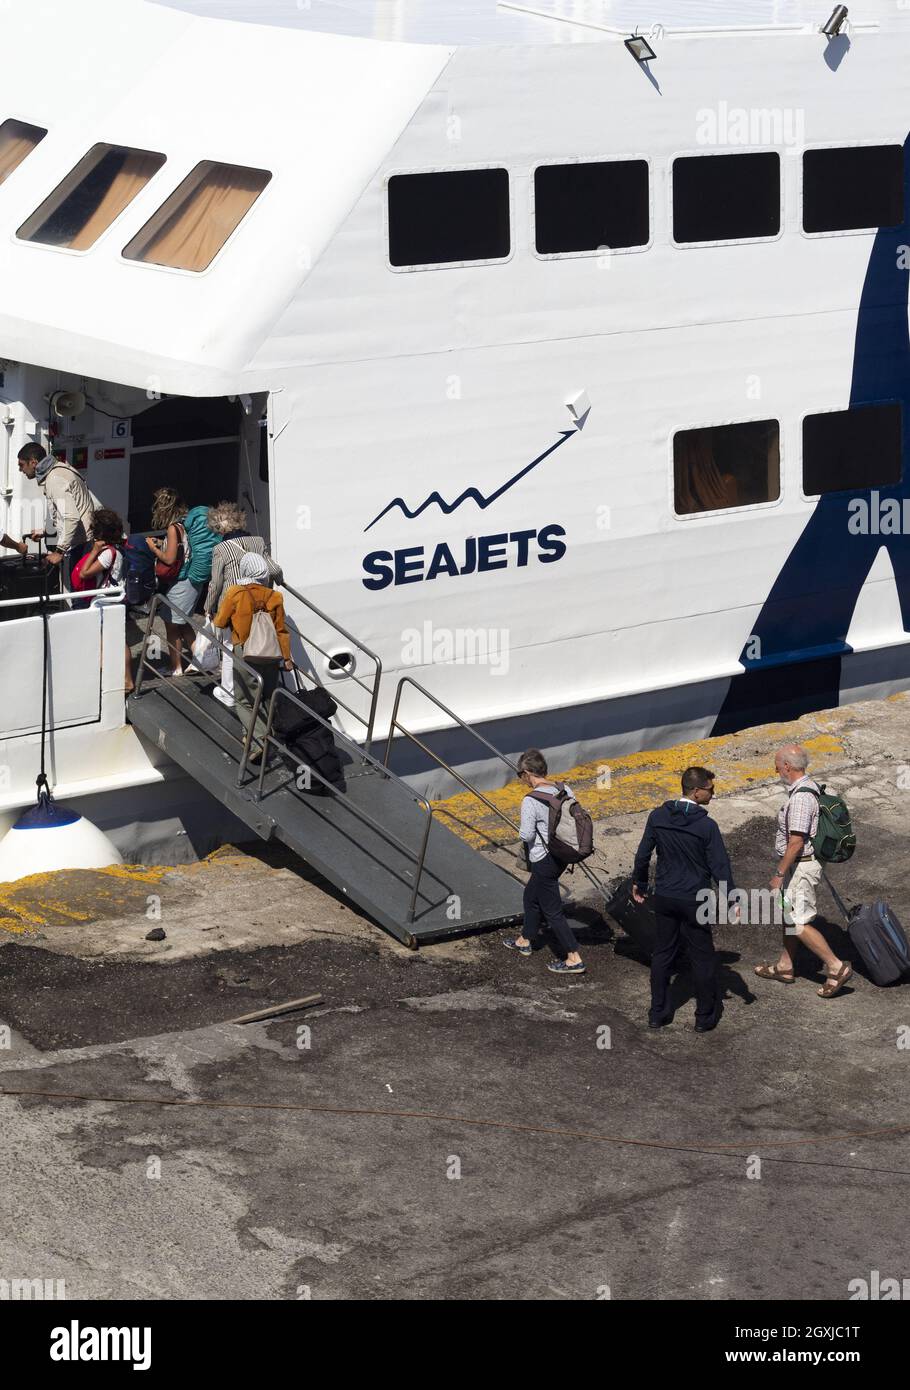 Insel Naxos - Griechenland - September 27 2019 : Schnellfähre mit Passagieren an Bord. Vertikale Aufnahme aus einem hohen Winkel Stockfoto